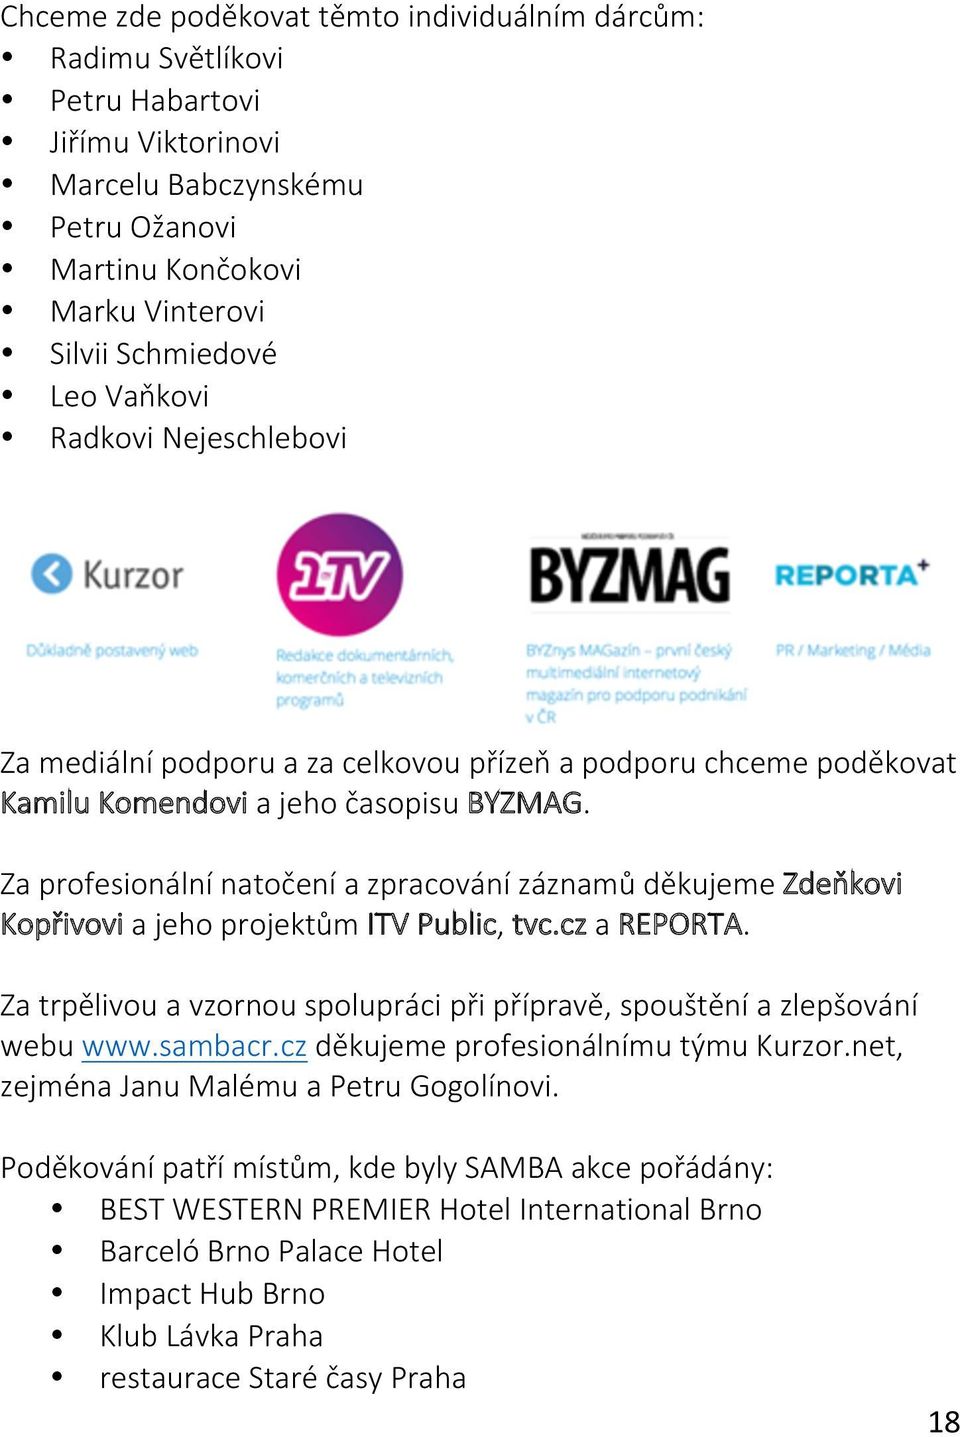 Za profesionální natočení a zpracování záznamů děkujeme Zdeňkovi Kopřivovi a jeho projektům ITV Public, tvc.cz a REPORTA.